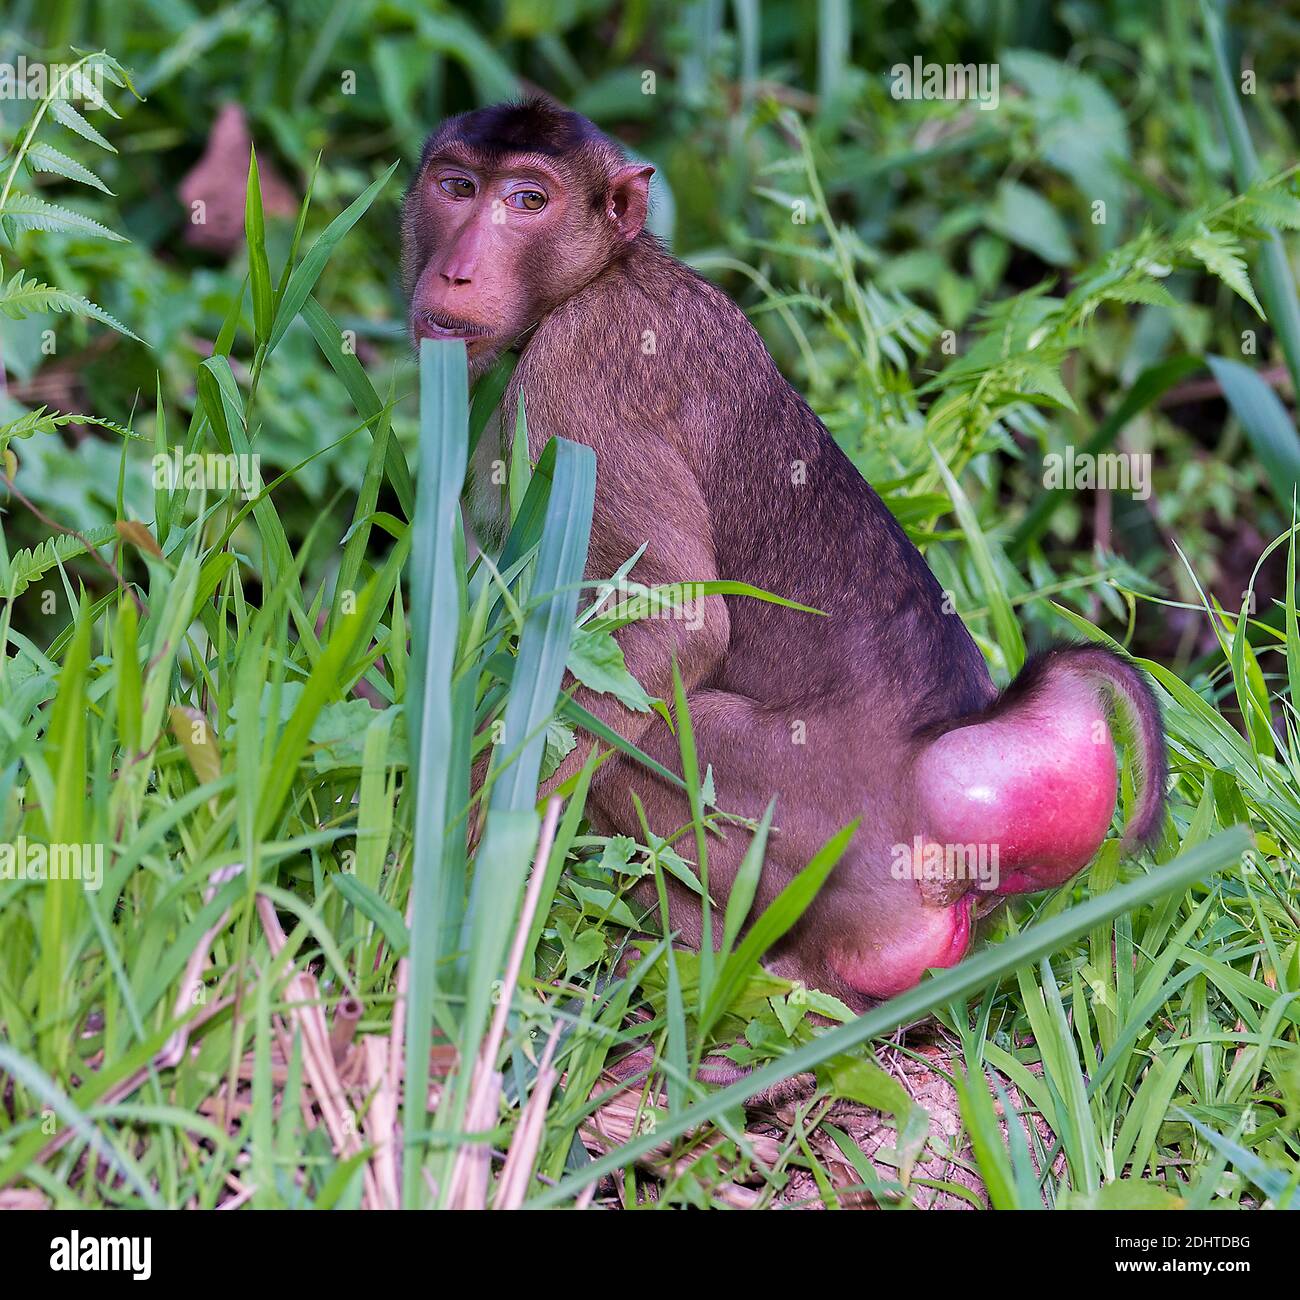 Femelle du macaque à queue de cochon du sud (Macaca nemestrina) de Tabin, Sabah, Bornéo. Le gonflement mais signes que cette femelle est prête à s'accoupler. Banque D'Images